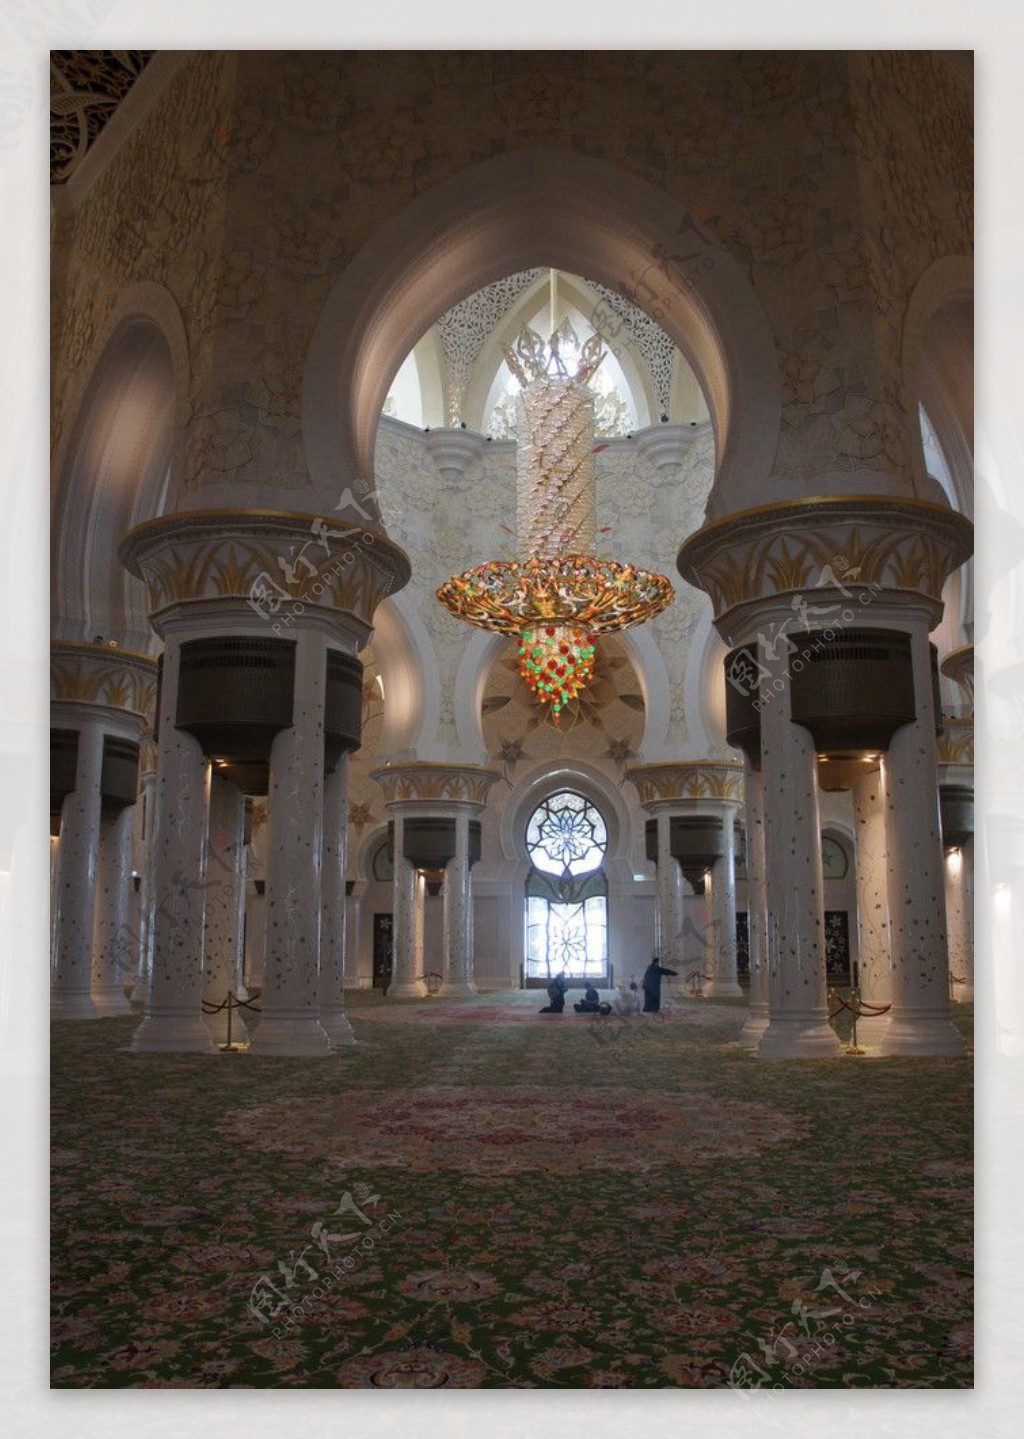 清真寺祈祷大厅